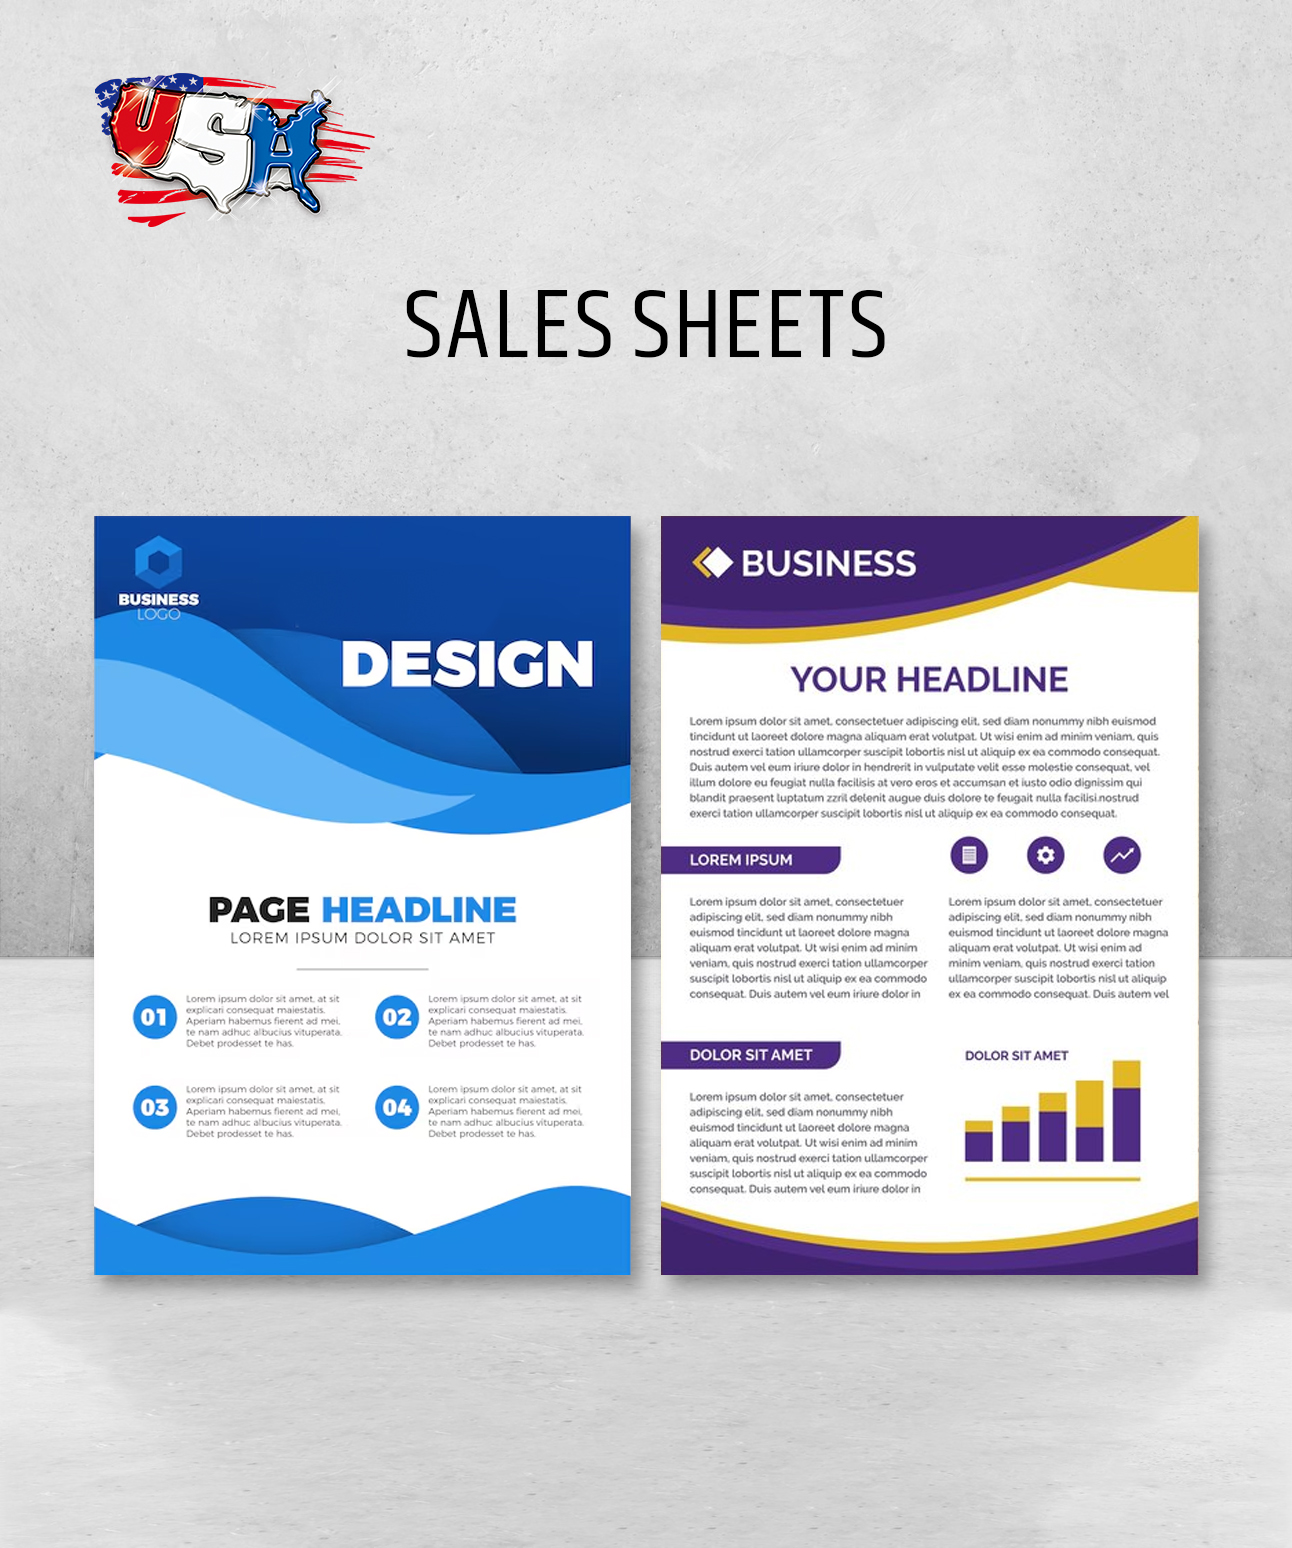 Sales Sheets